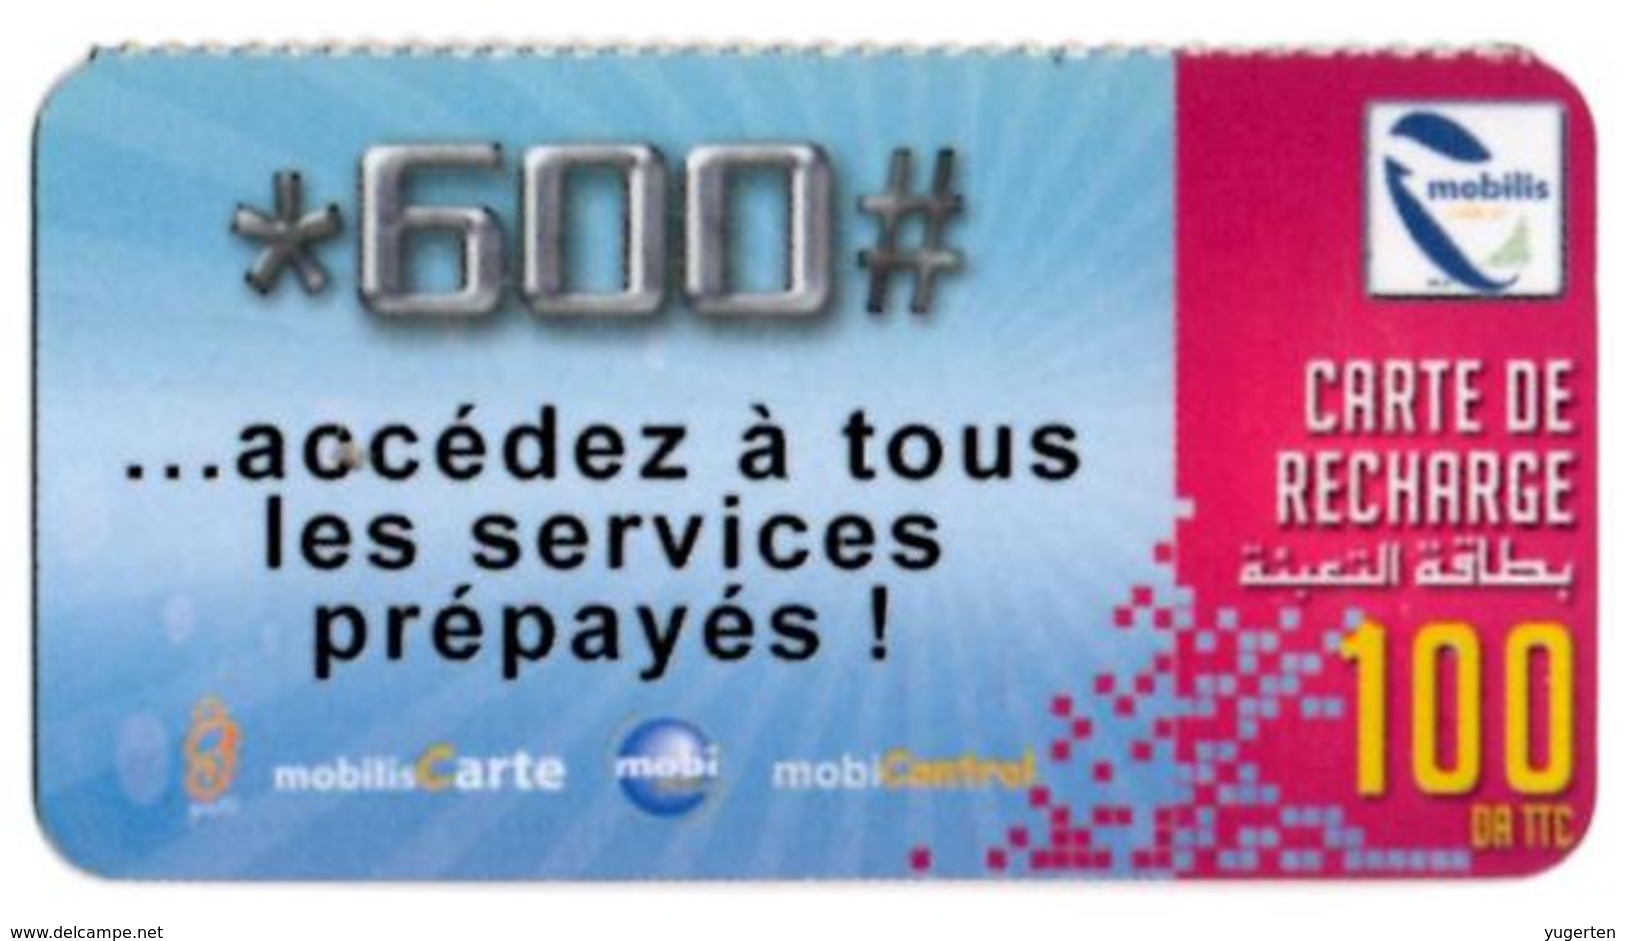 Phonecard Télécarte Mobilis Algérie Algeria - Accédez à Tous Les Services Prépayés Telefonkarte Telefonica - Algeria